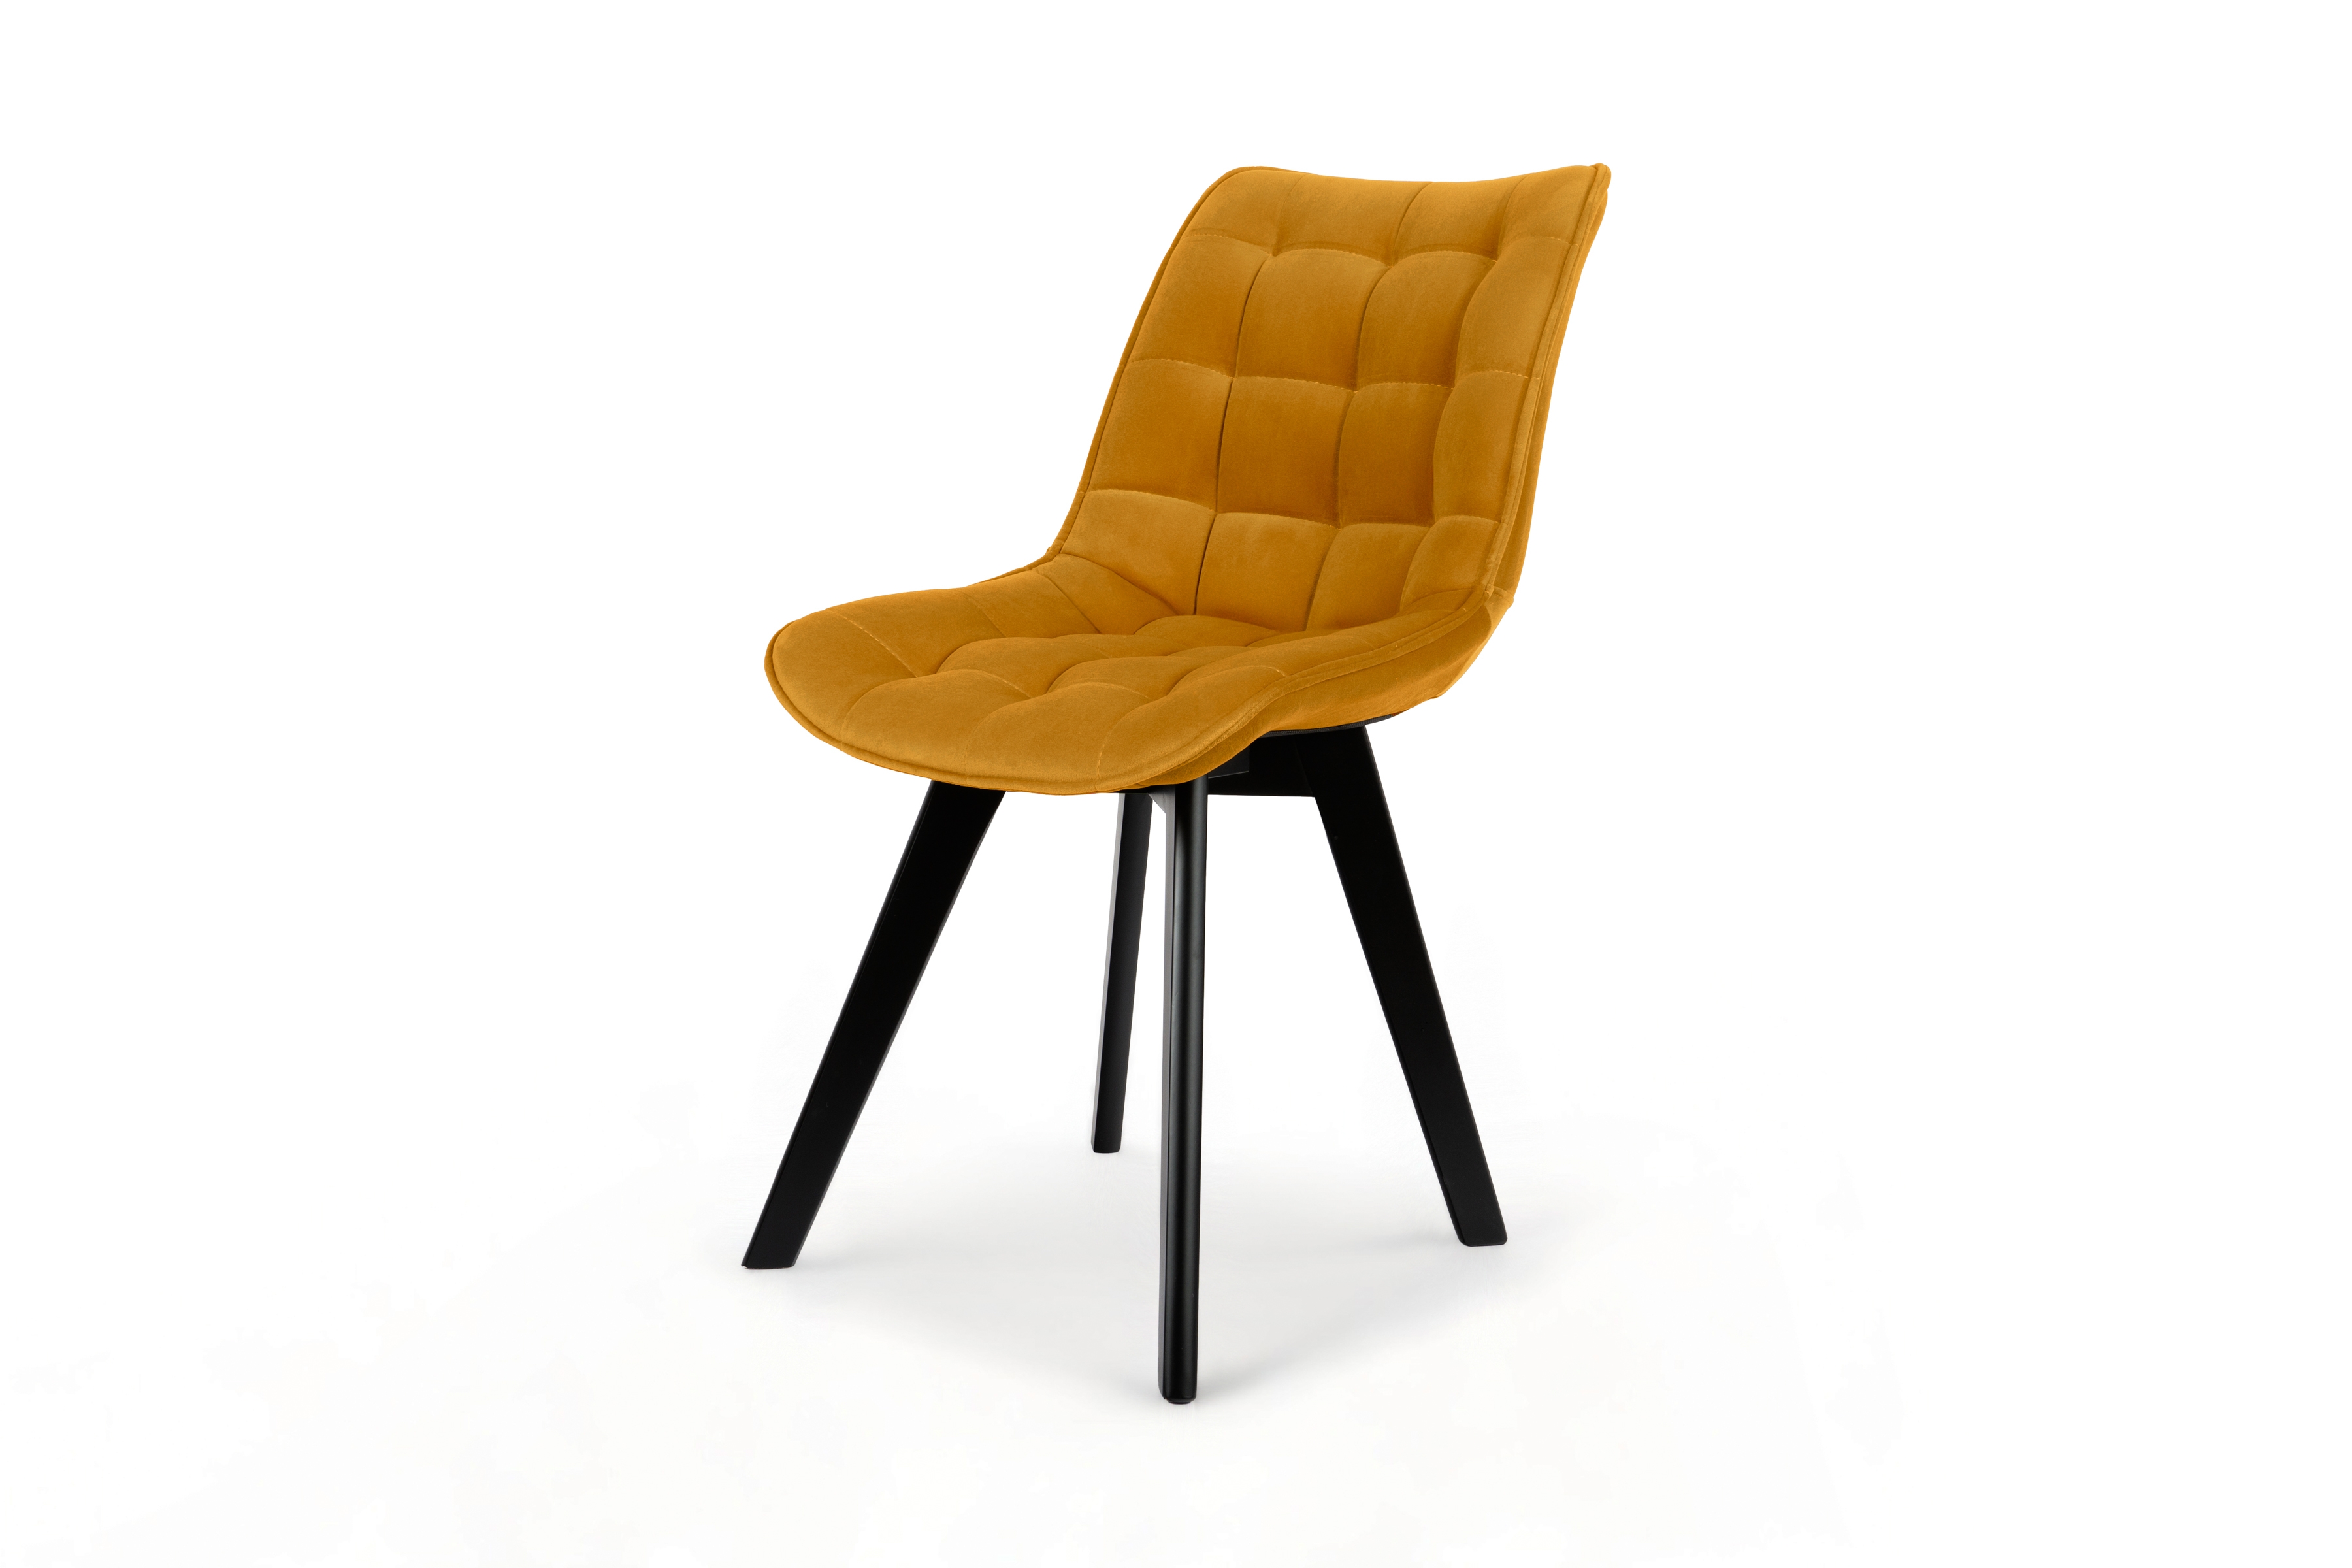 Krzesło tapicerowane Prato na drewnianych nogach 